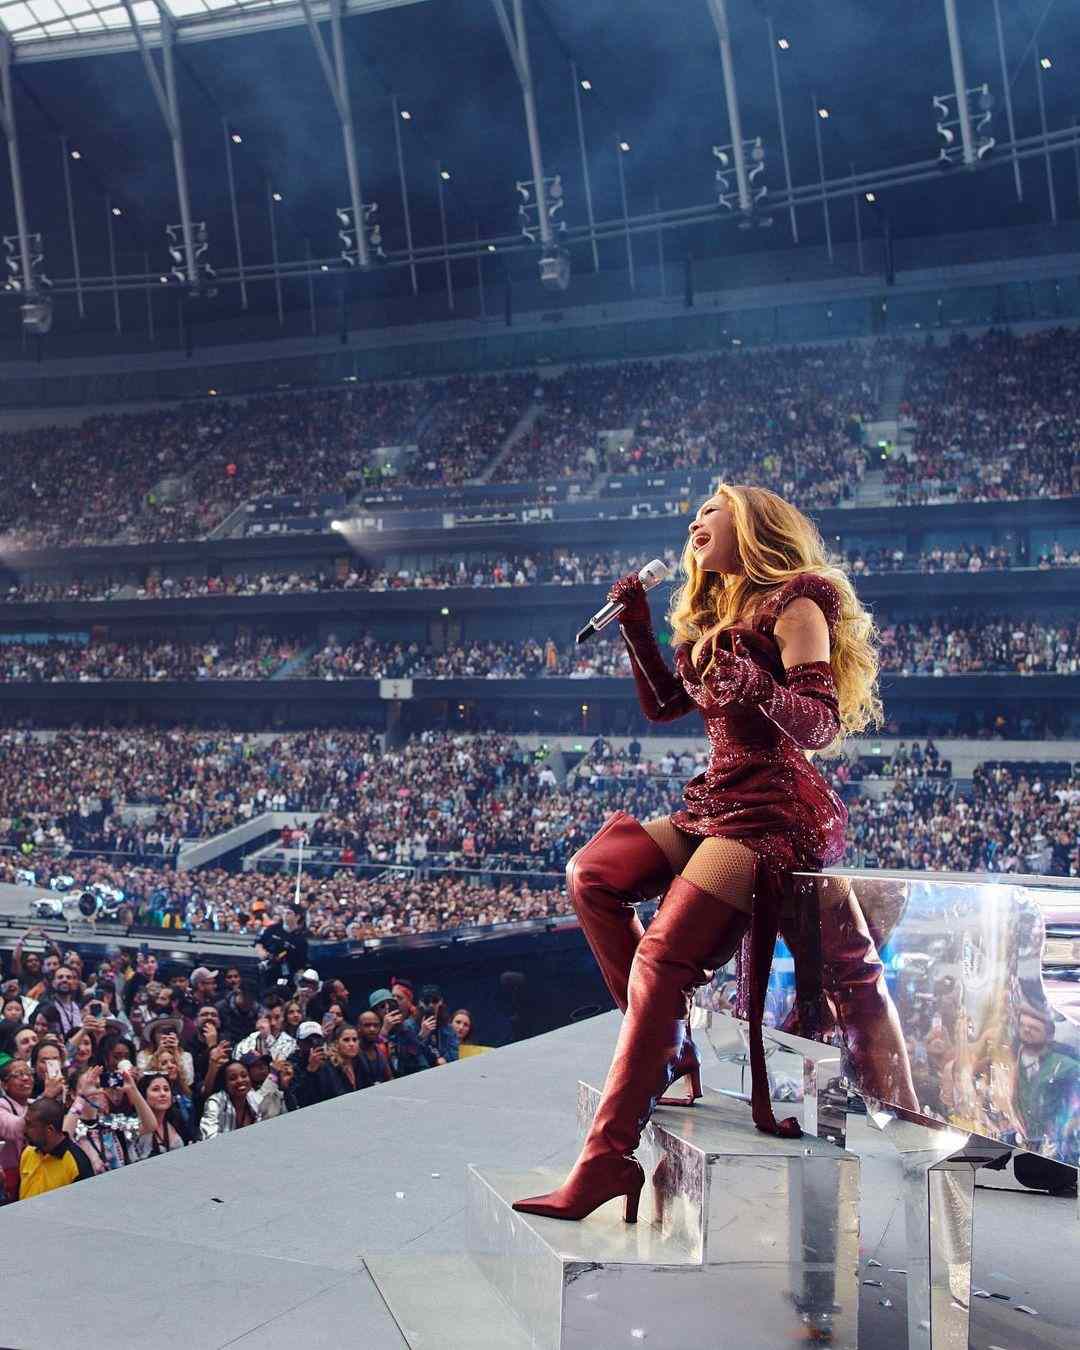 Ini 5 Fakta Menarik di Balik Beyoncé Renaissance World Tour